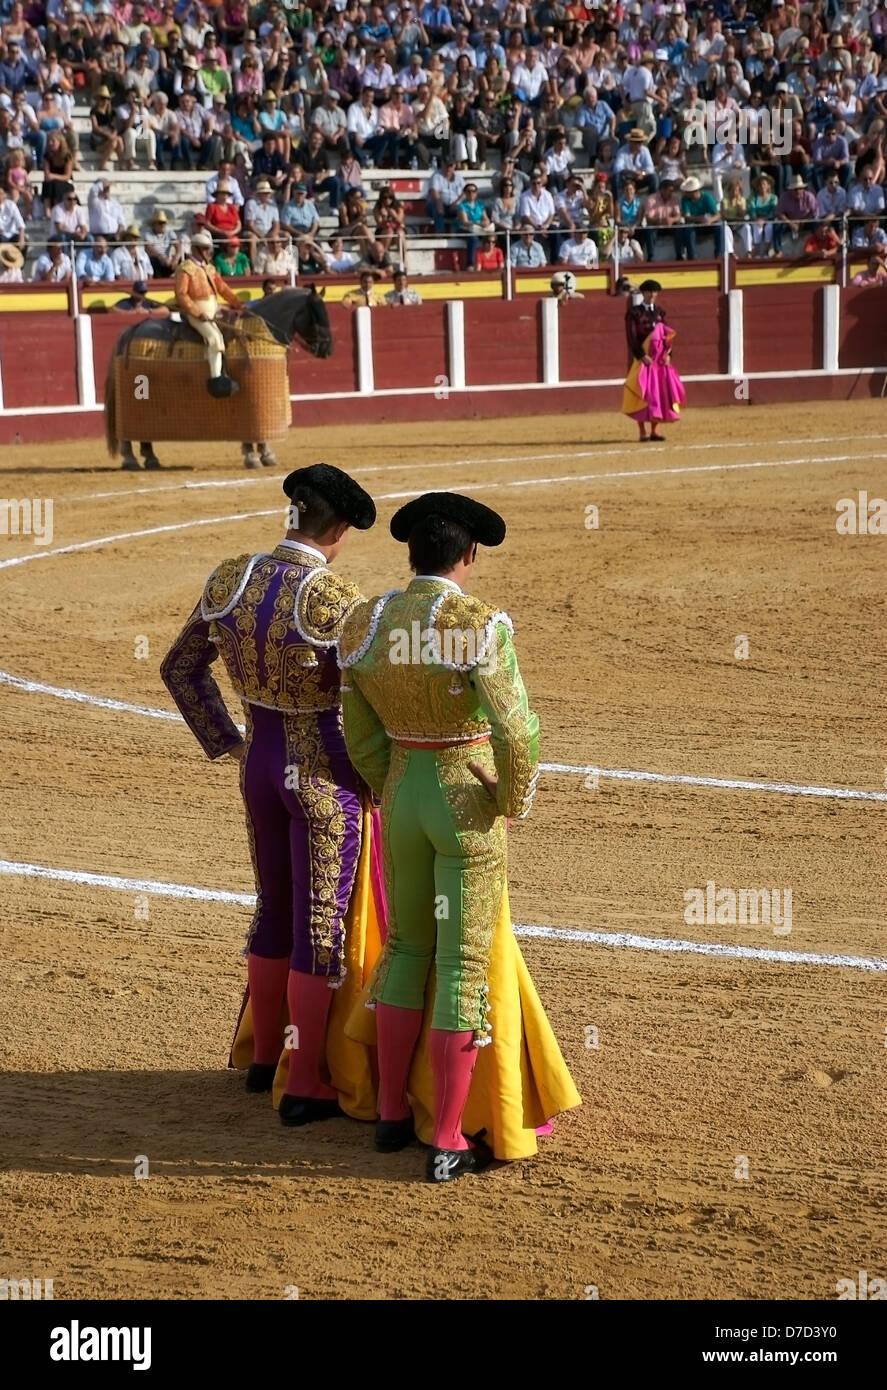 Durante una corrida de toros, Banderilleros esperando el picador para realizar en la plaza de toros de Fuengirola, Costa del Sol, España. Foto de stock